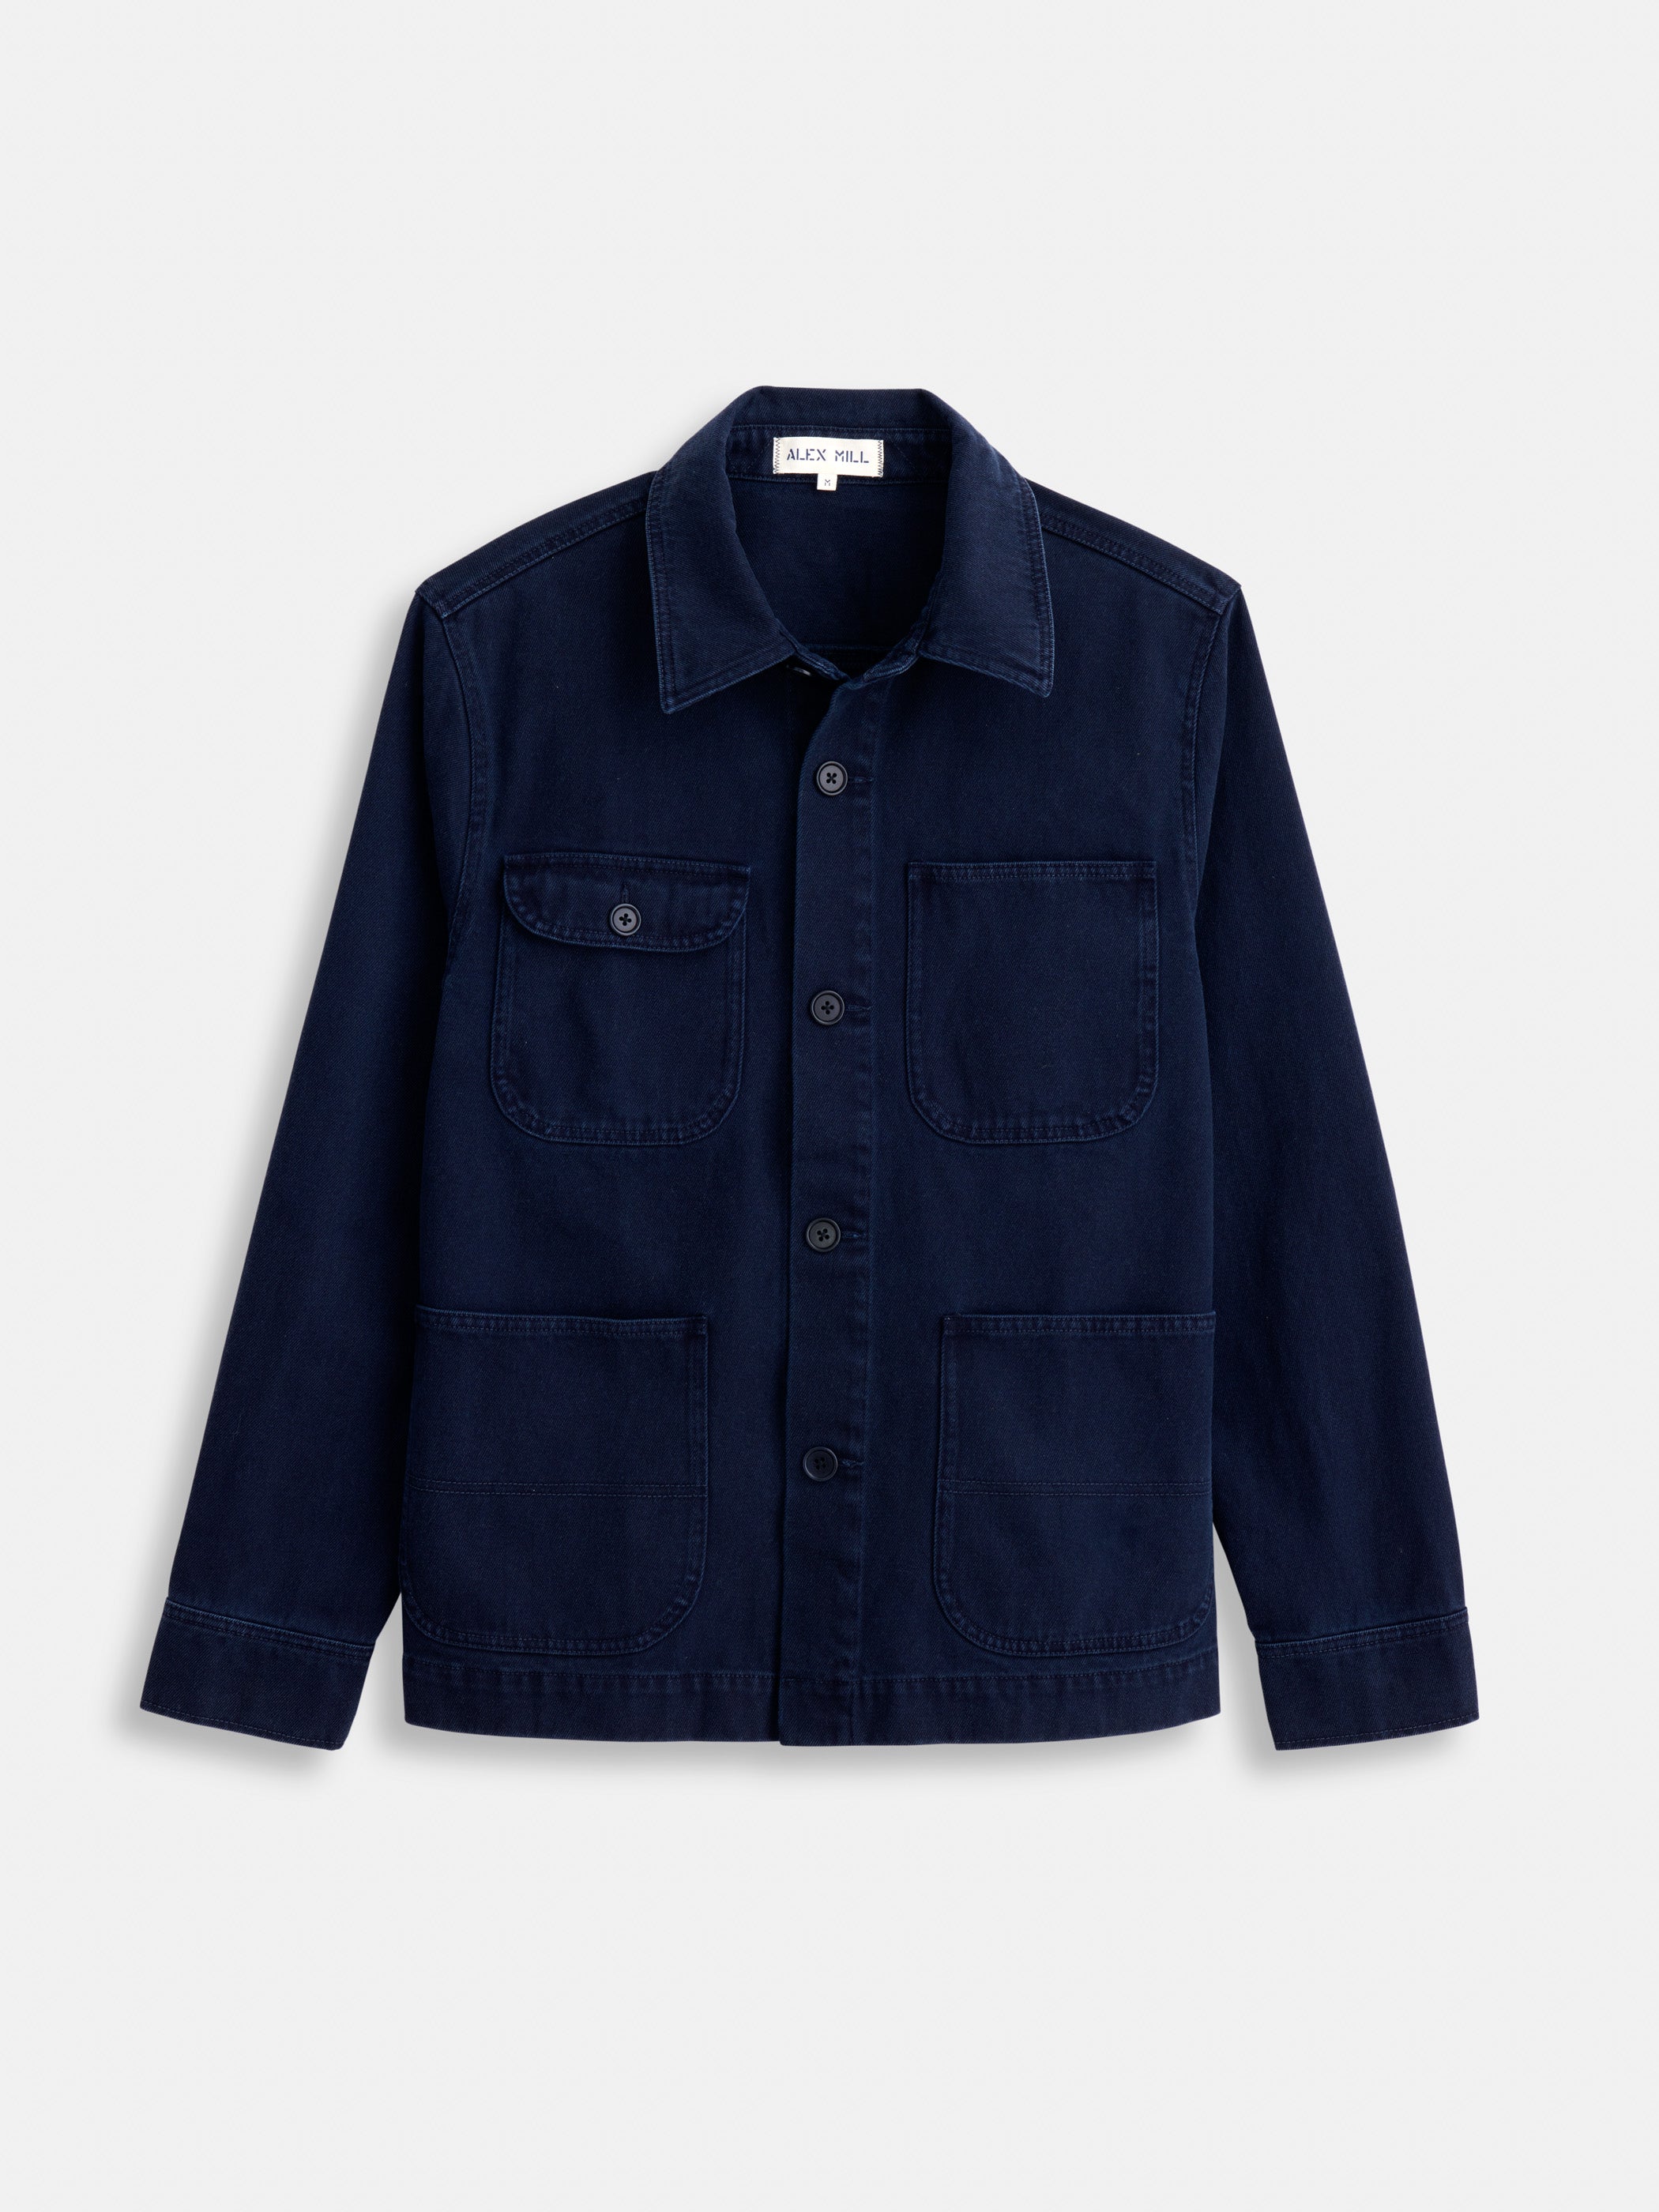 Men's Coats & Work Jackets